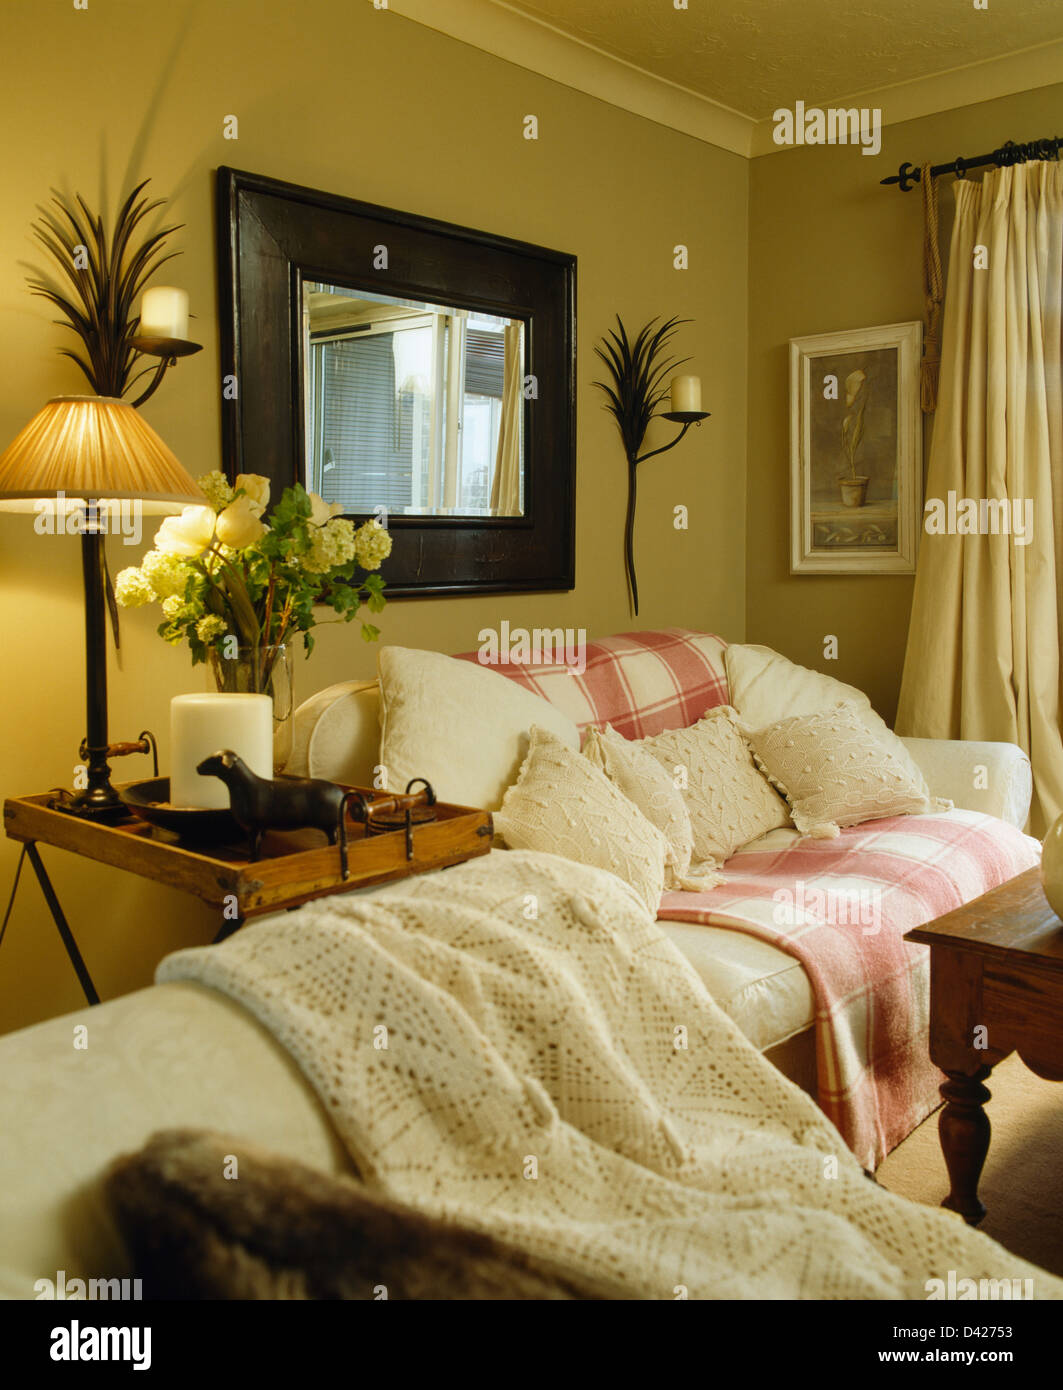 Grande specchio sopra la crema divano con rosa bianca+buttare in ocra  stanza vivente con metallo palm appliques e lampada accesa sul tavolo Foto  stock - Alamy